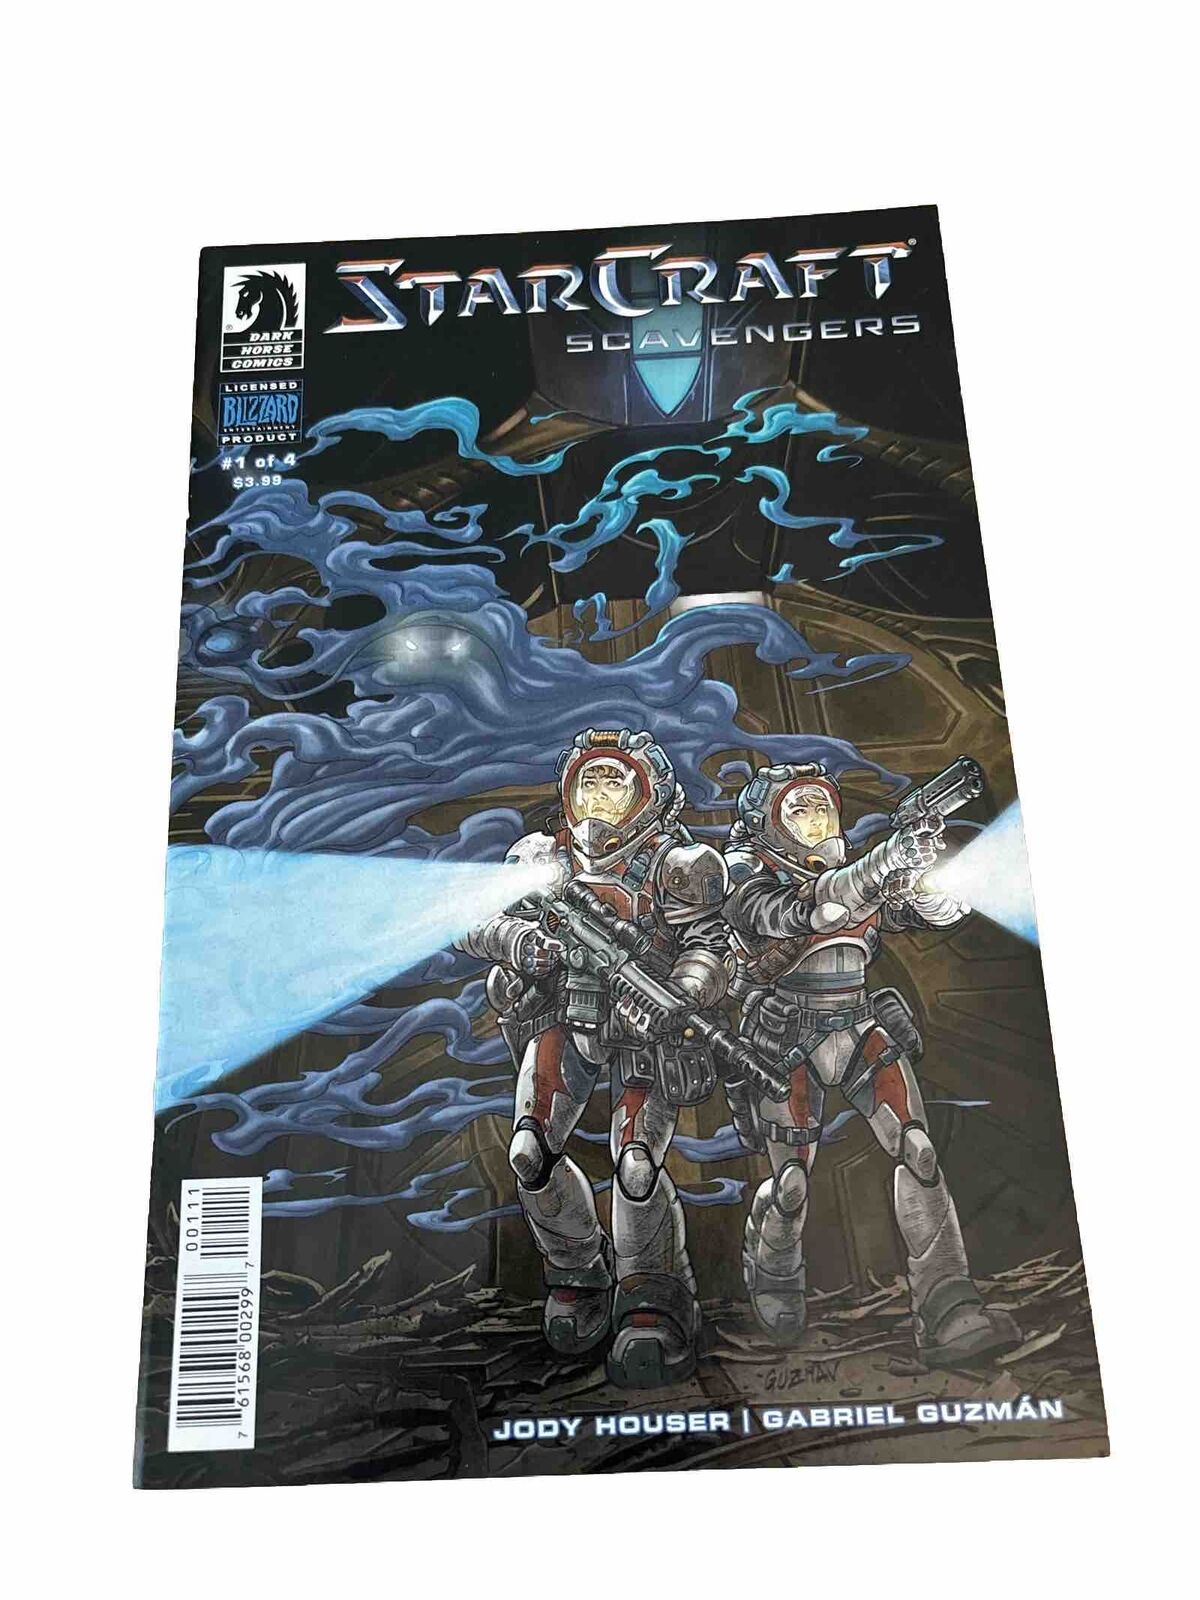 StarCraft Scavengers #1 A Cover VF/NM Comic Book Dark Horse (box50)